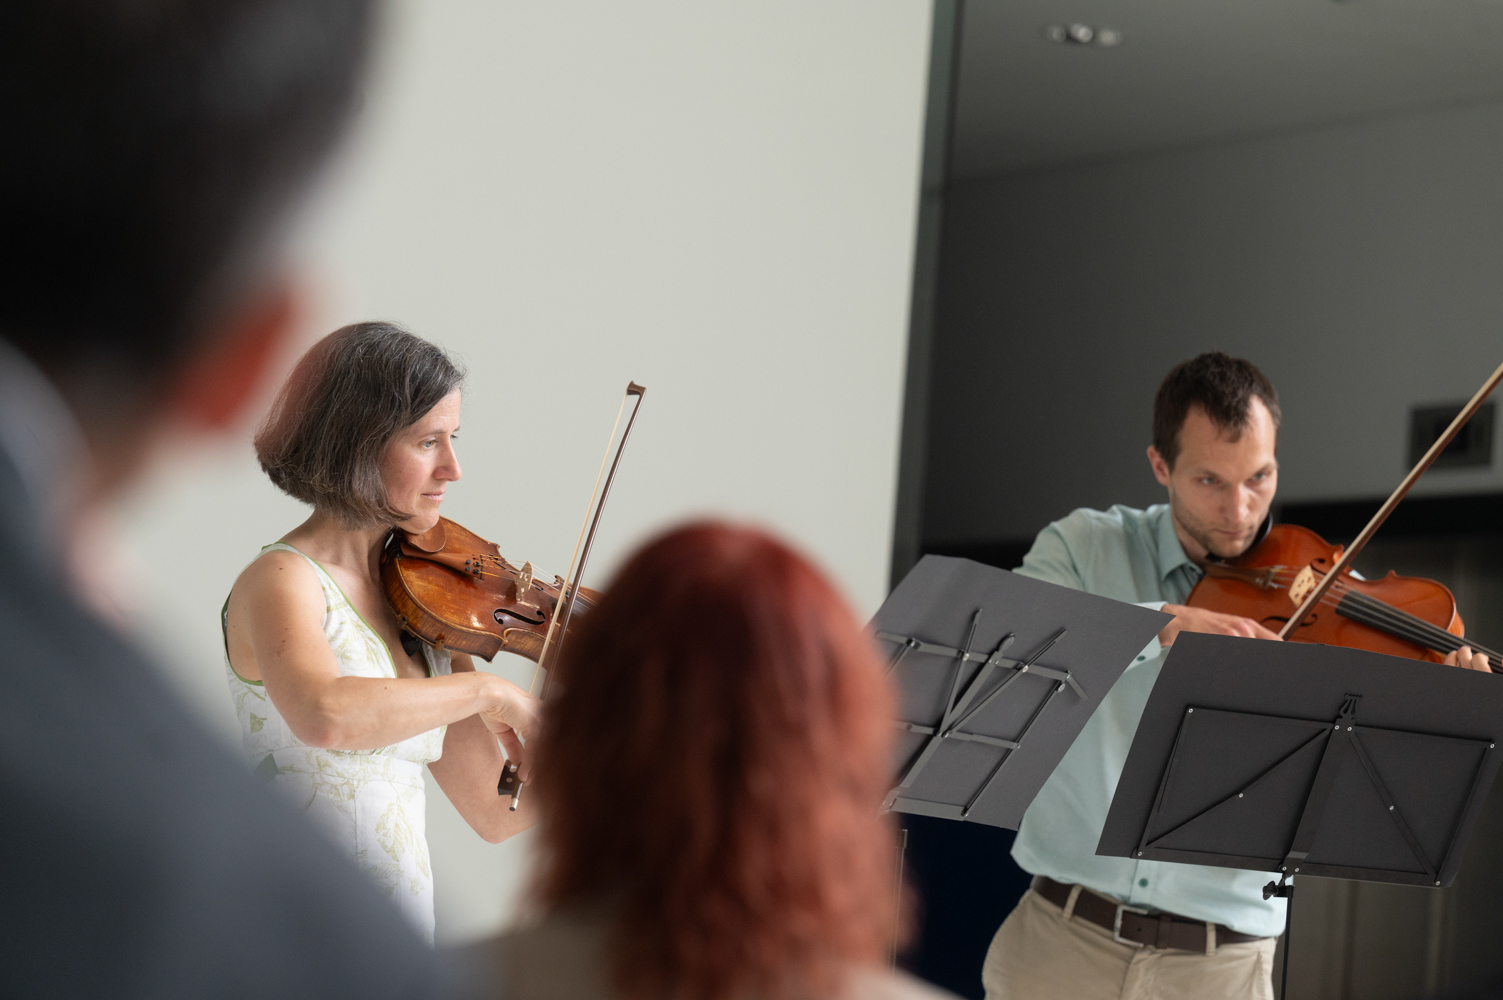 Über die Köpfe der Gäste hinweg sieht man die beiden Musizierenden mit Violine und Viola.